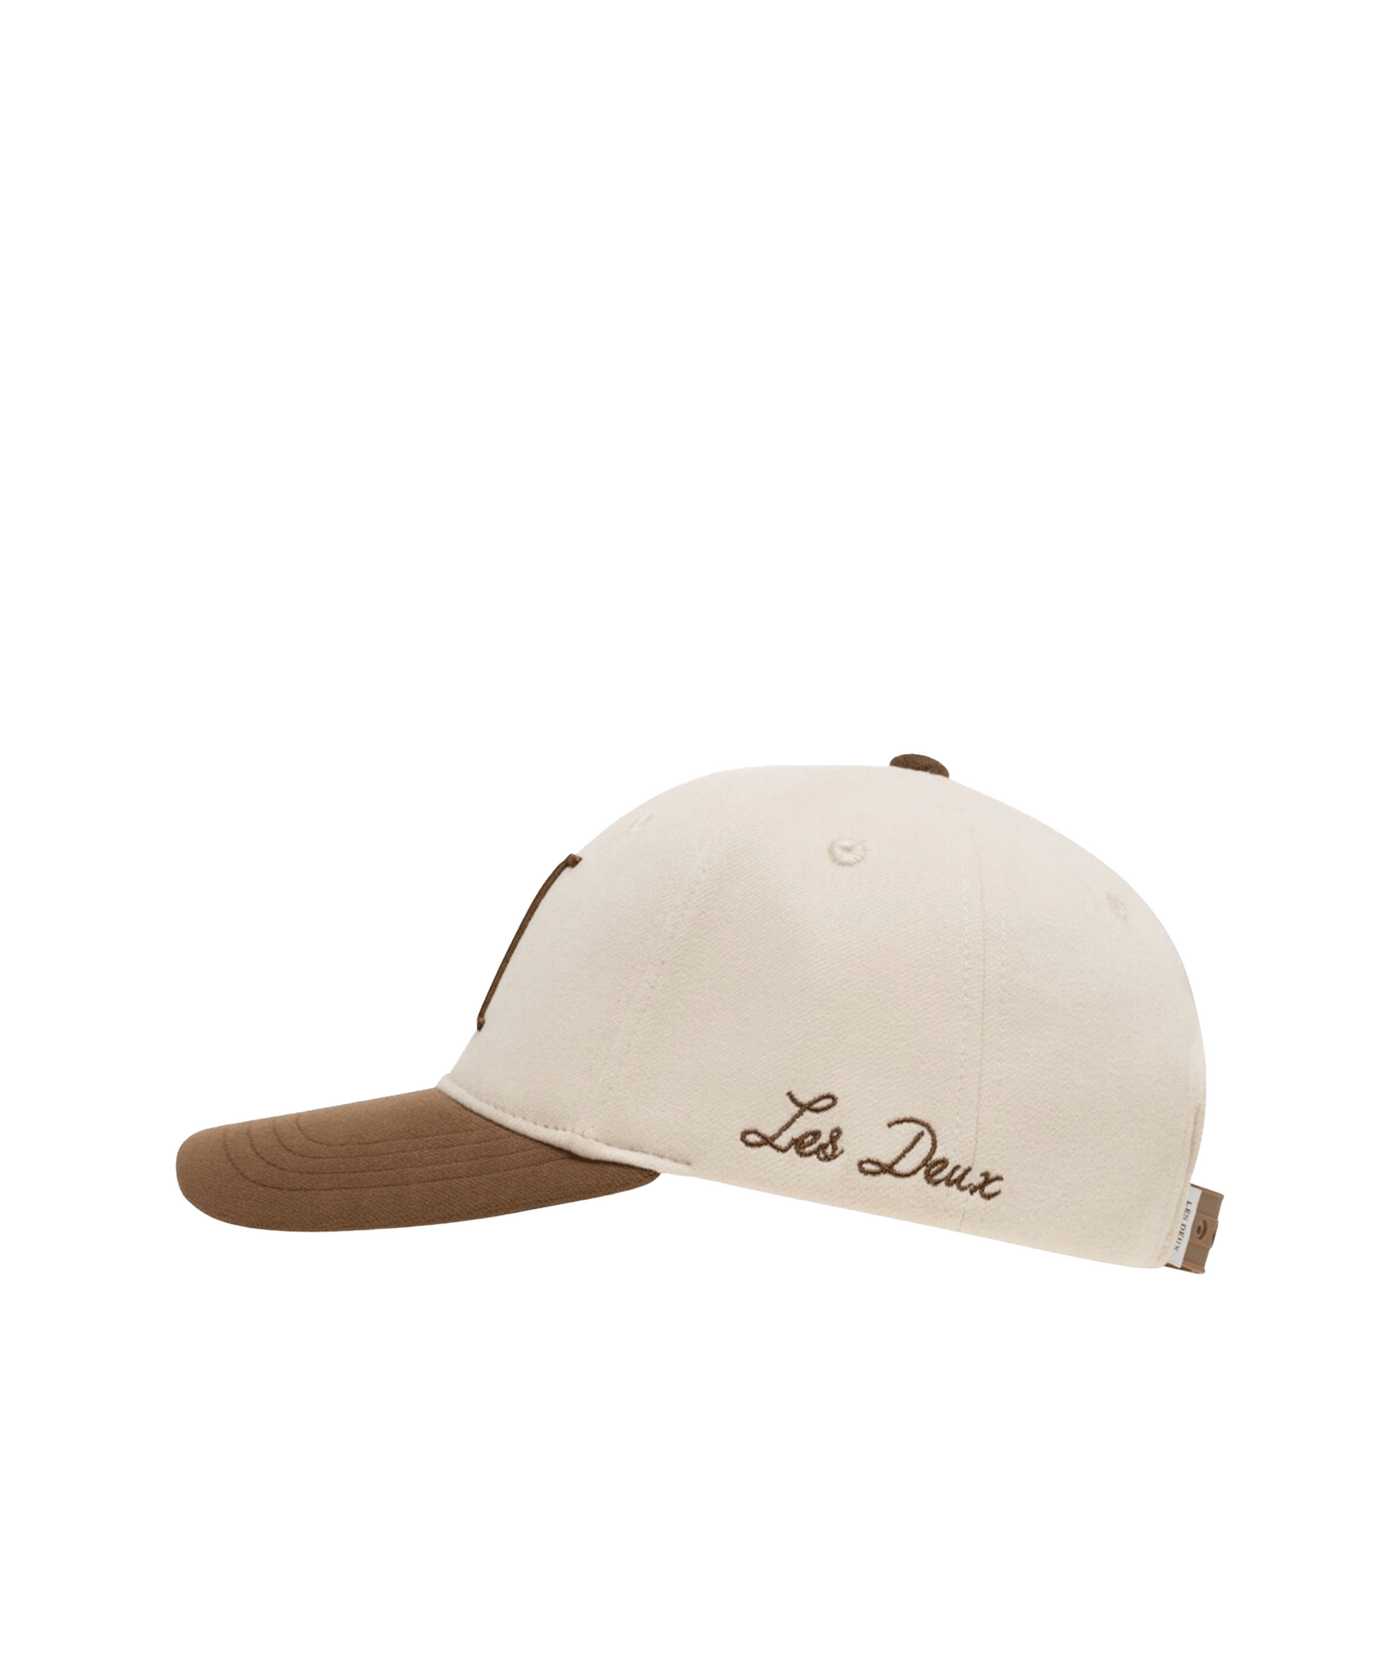 Les Deux - Ldm702057 - Contrast Baseball Cap - Ivory